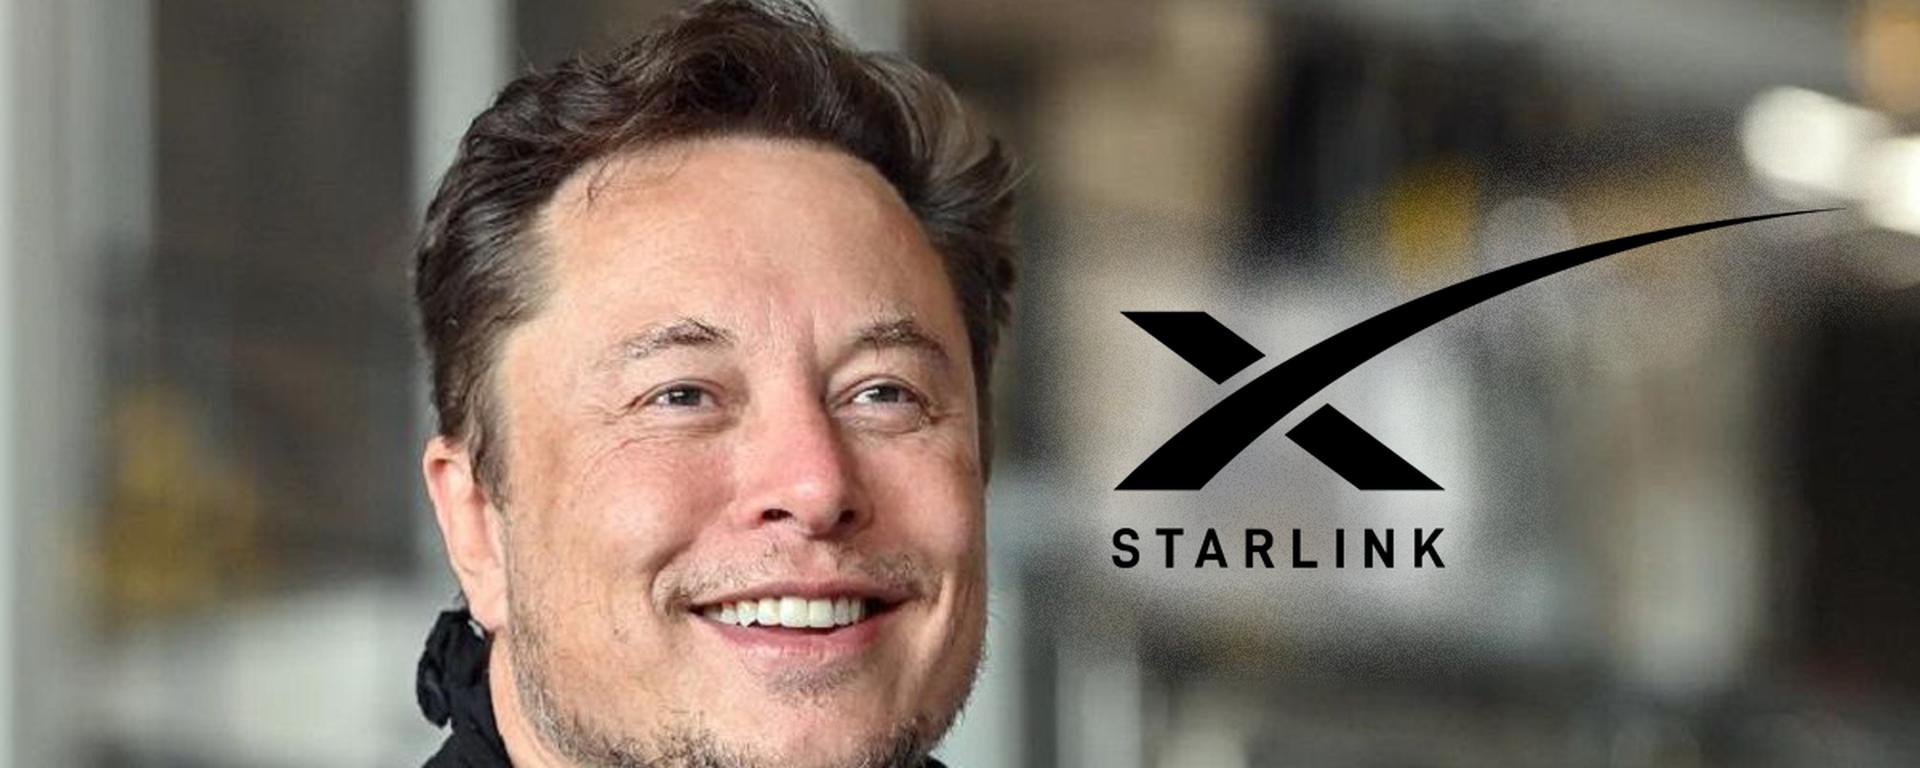 Starlink y su precio (elevado): ¿Cómo fue recibido el internet satelital de Elon Musk en países como México o Chile?